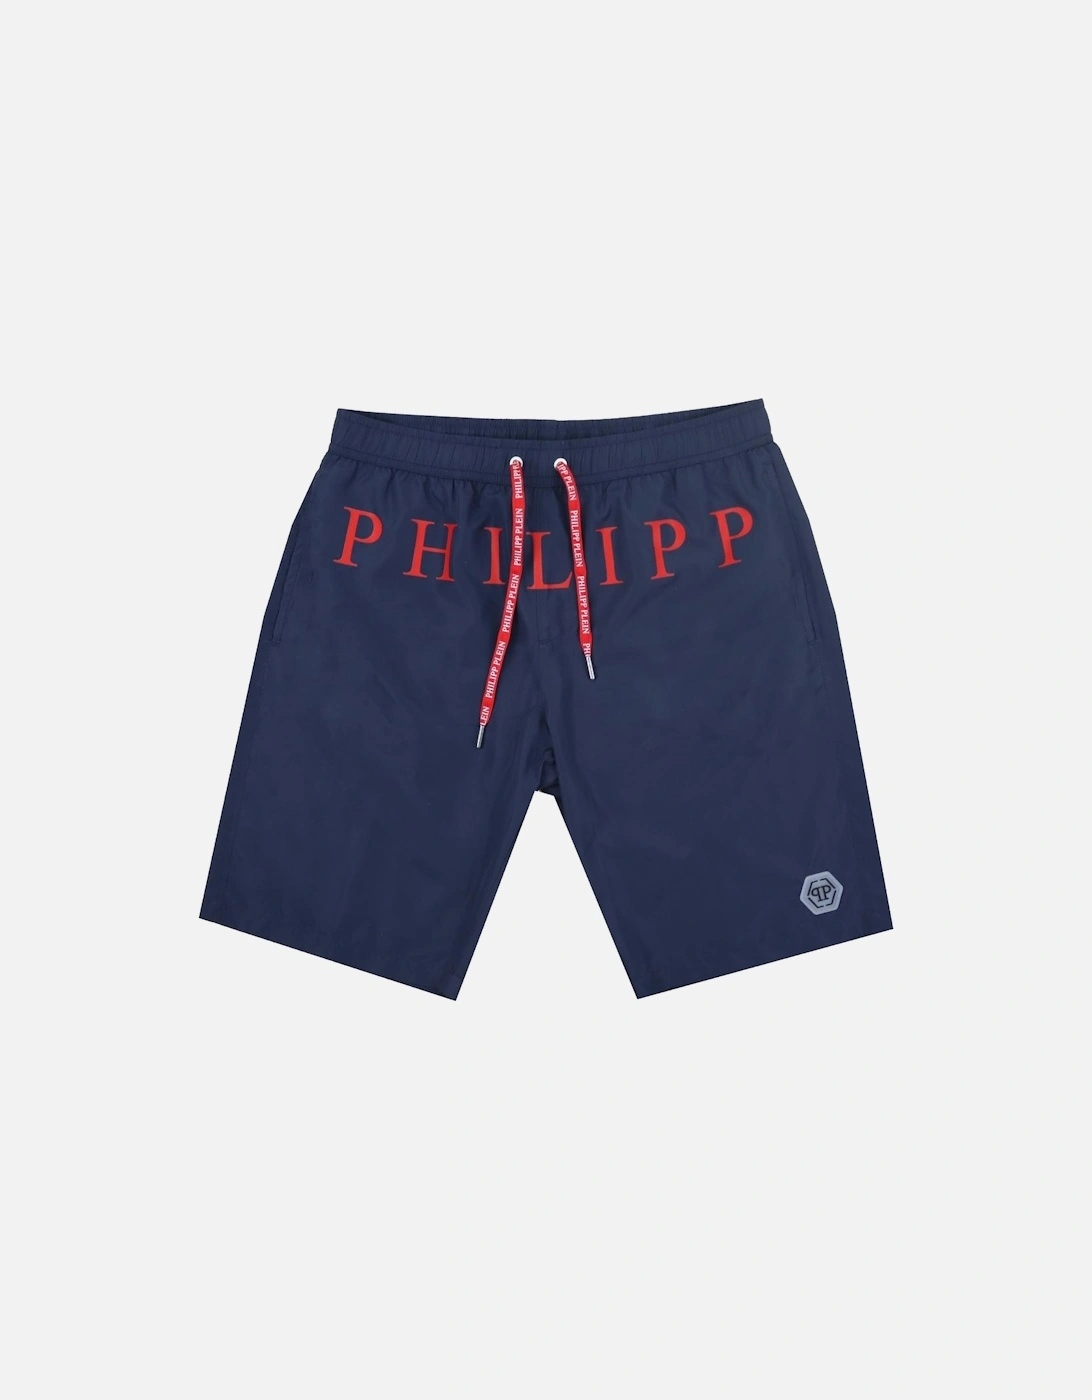 Red Brand Logo Navy Blue Swim Shorts, 3 of 2